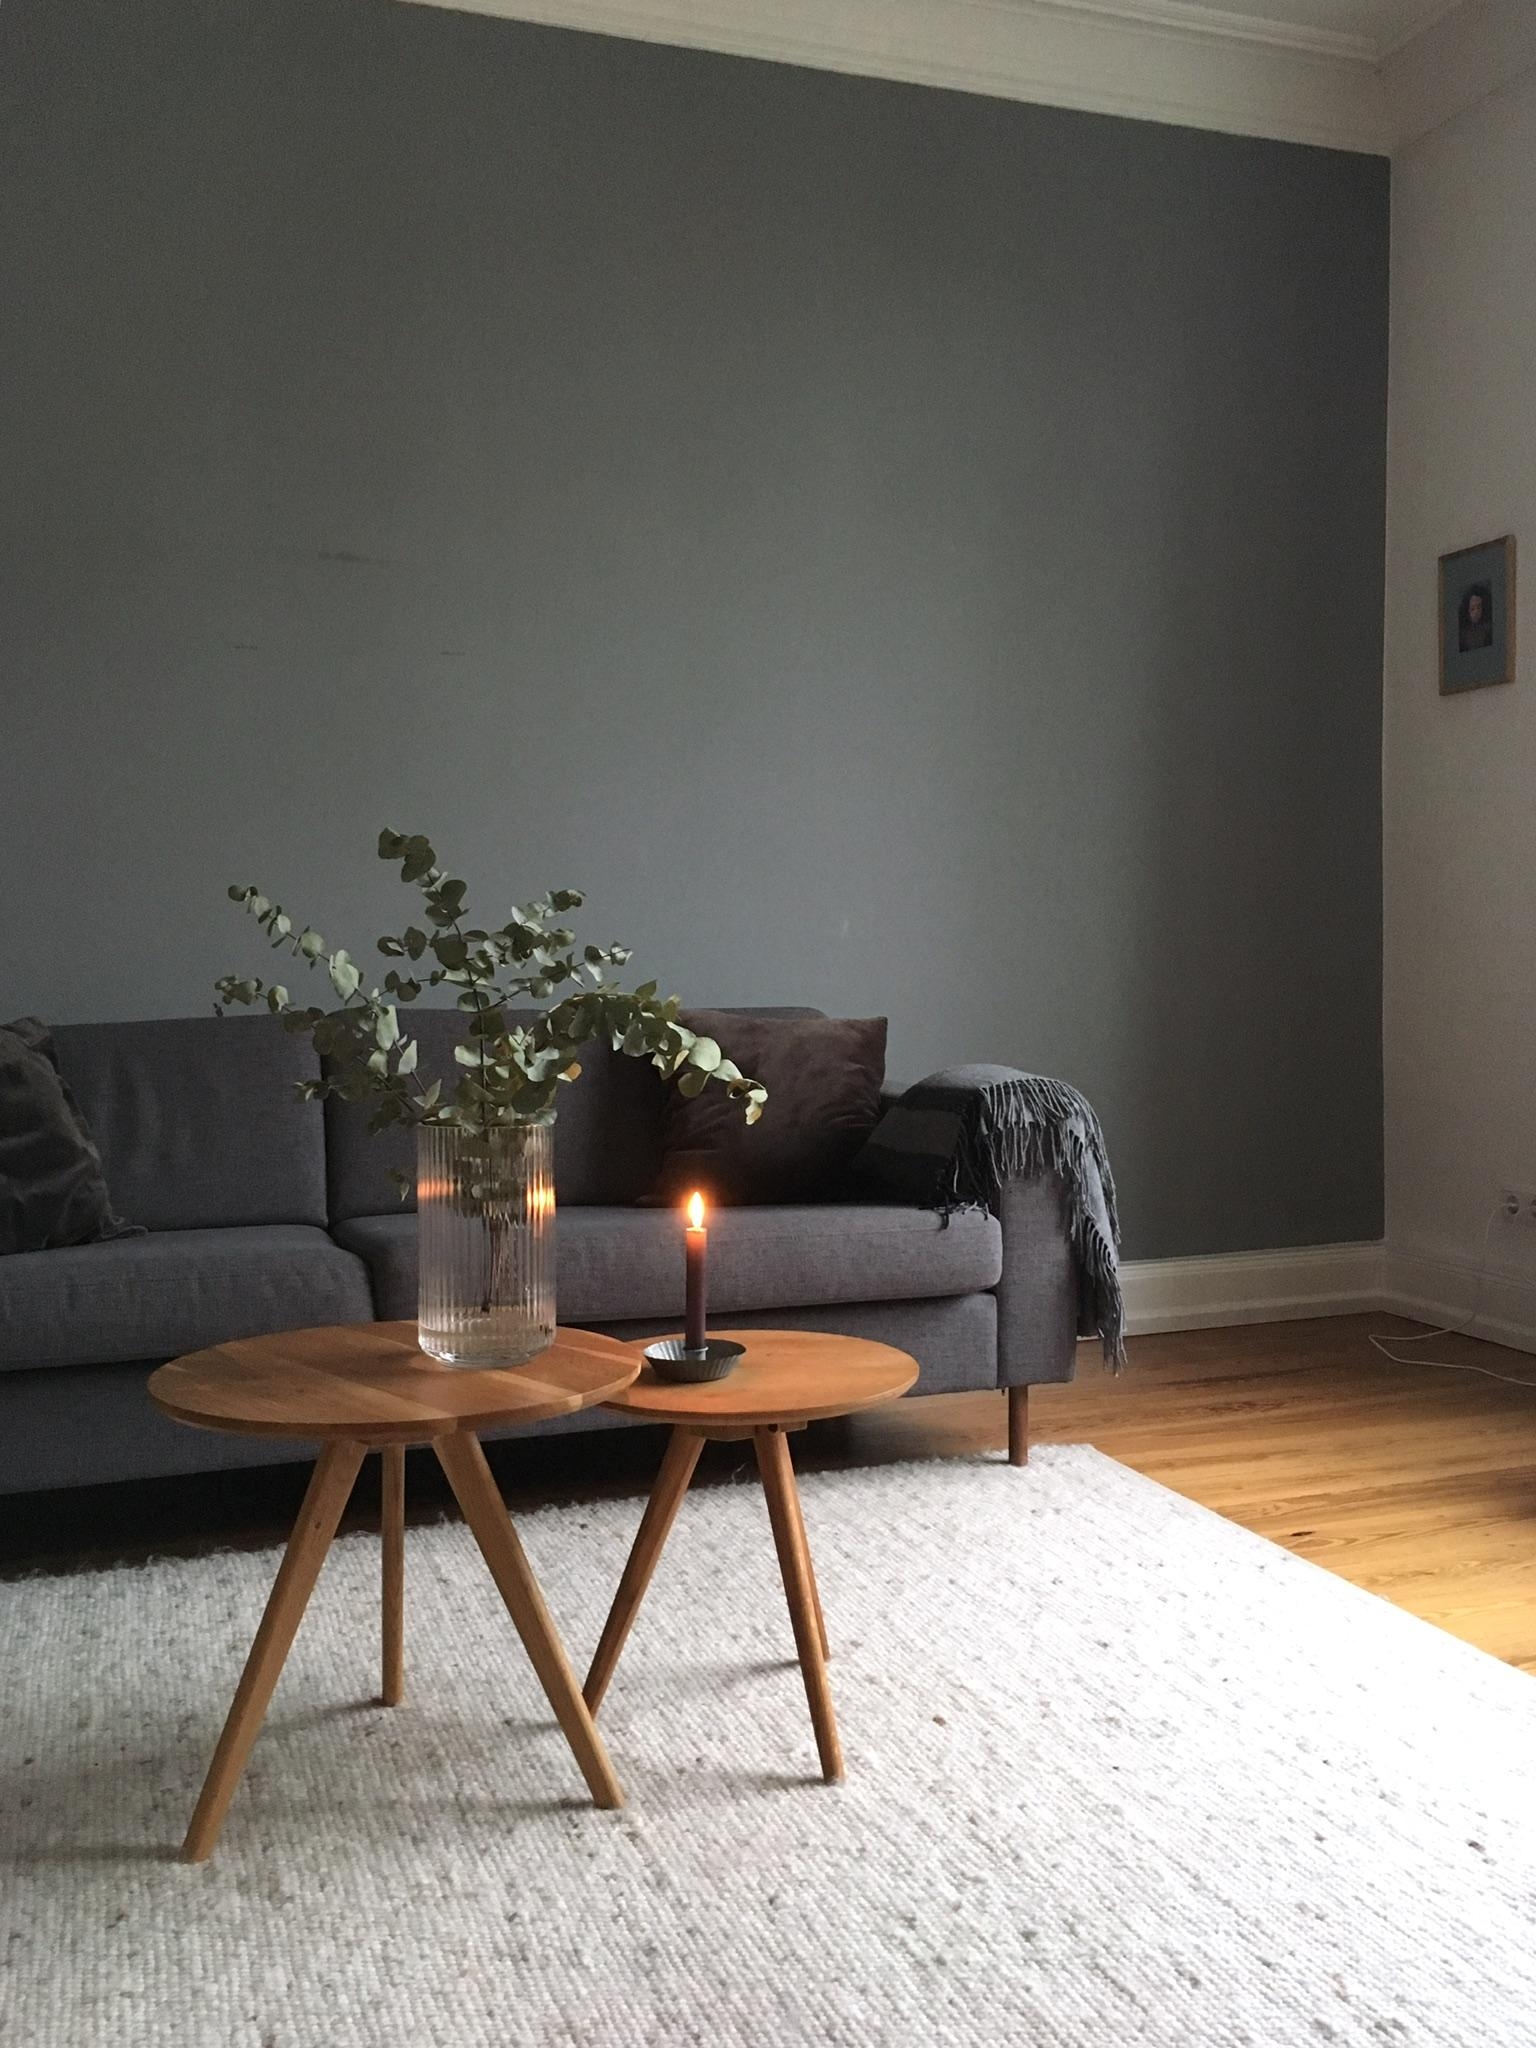 eukalyptusliebe #blumen #flowers #eukalyptus #wohnzimmer #couch #grau #living #dekoidee #altbau #stimmung #minimalismus 